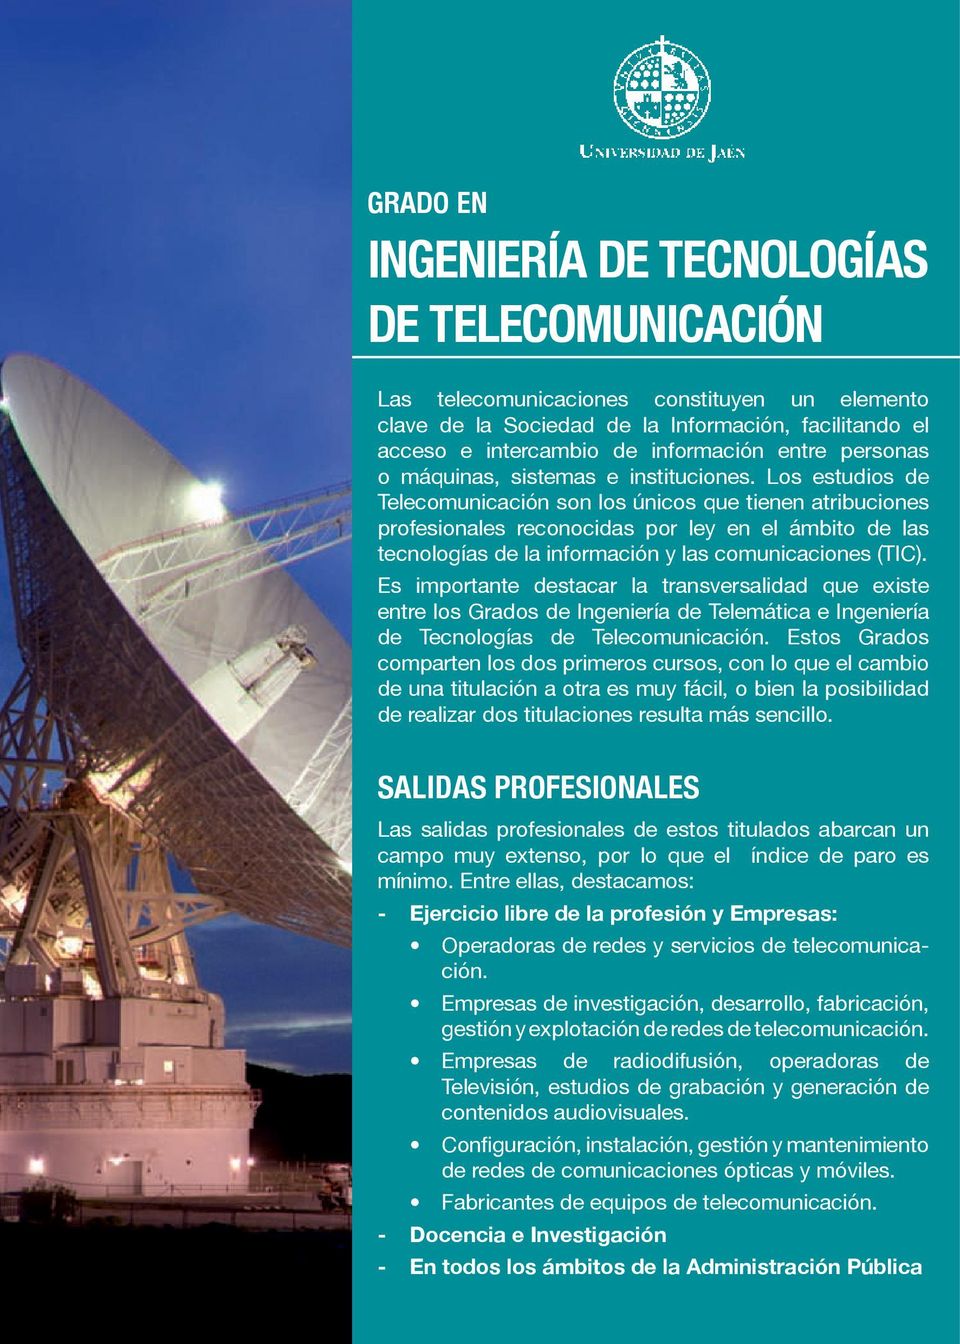 Los estudios de Telecomunicación son los únicos que tienen atribuciones profesionales reconocidas por ley en el ámbito de las tecnologías de la información y las comunicaciones (TIC).